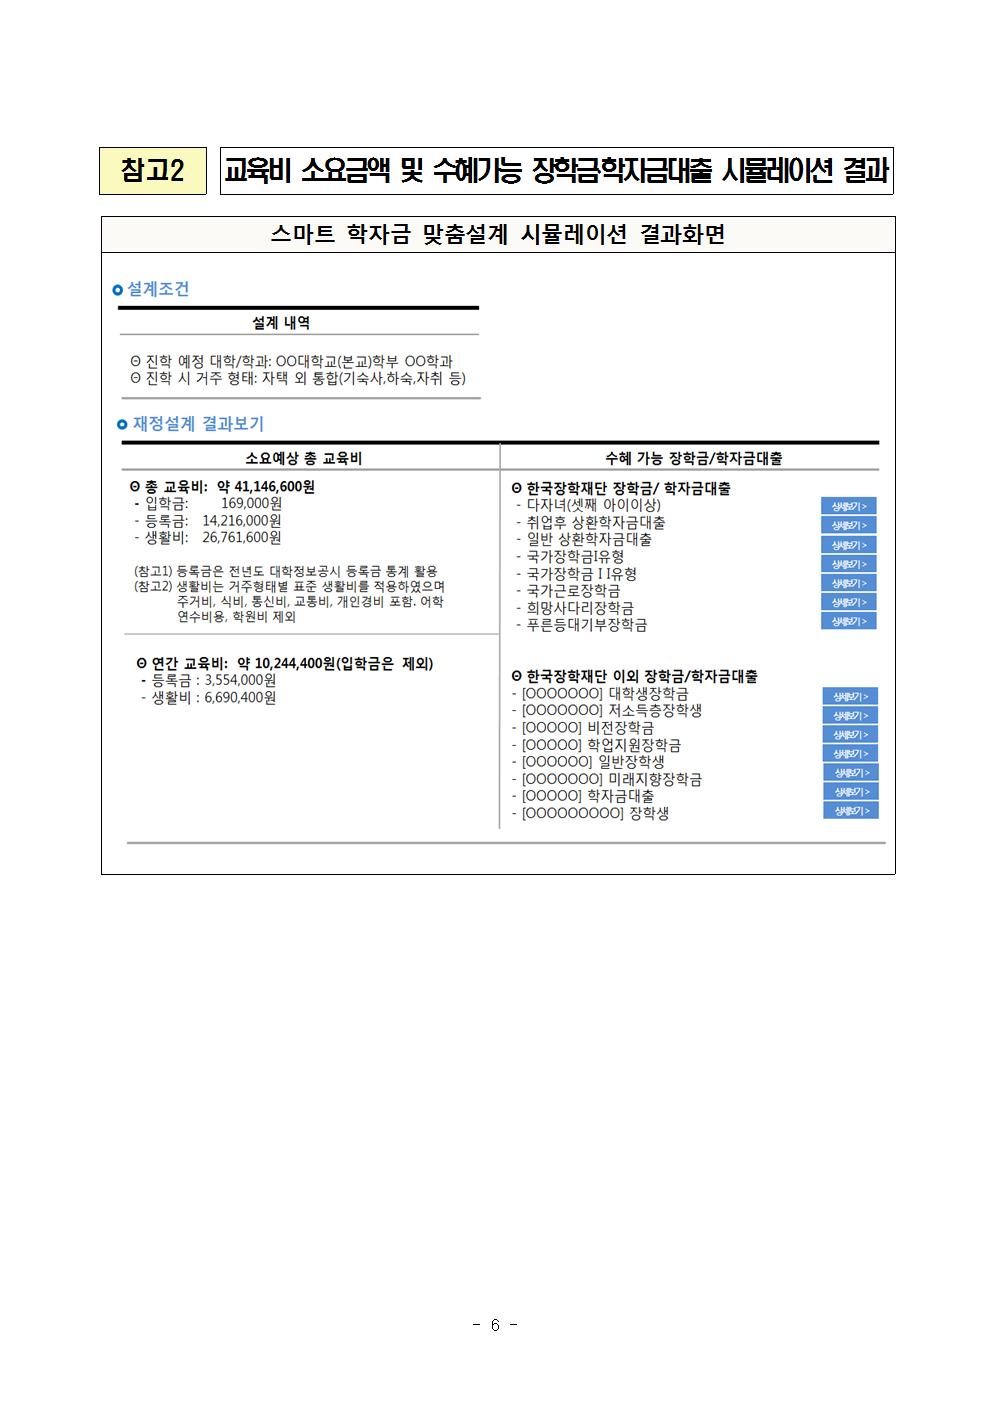 04-25(화)[보도자료] 한국장학재단, 맞춤형 학자금 재정설계 정부3.0 서비스 개시(최종)006.jpg